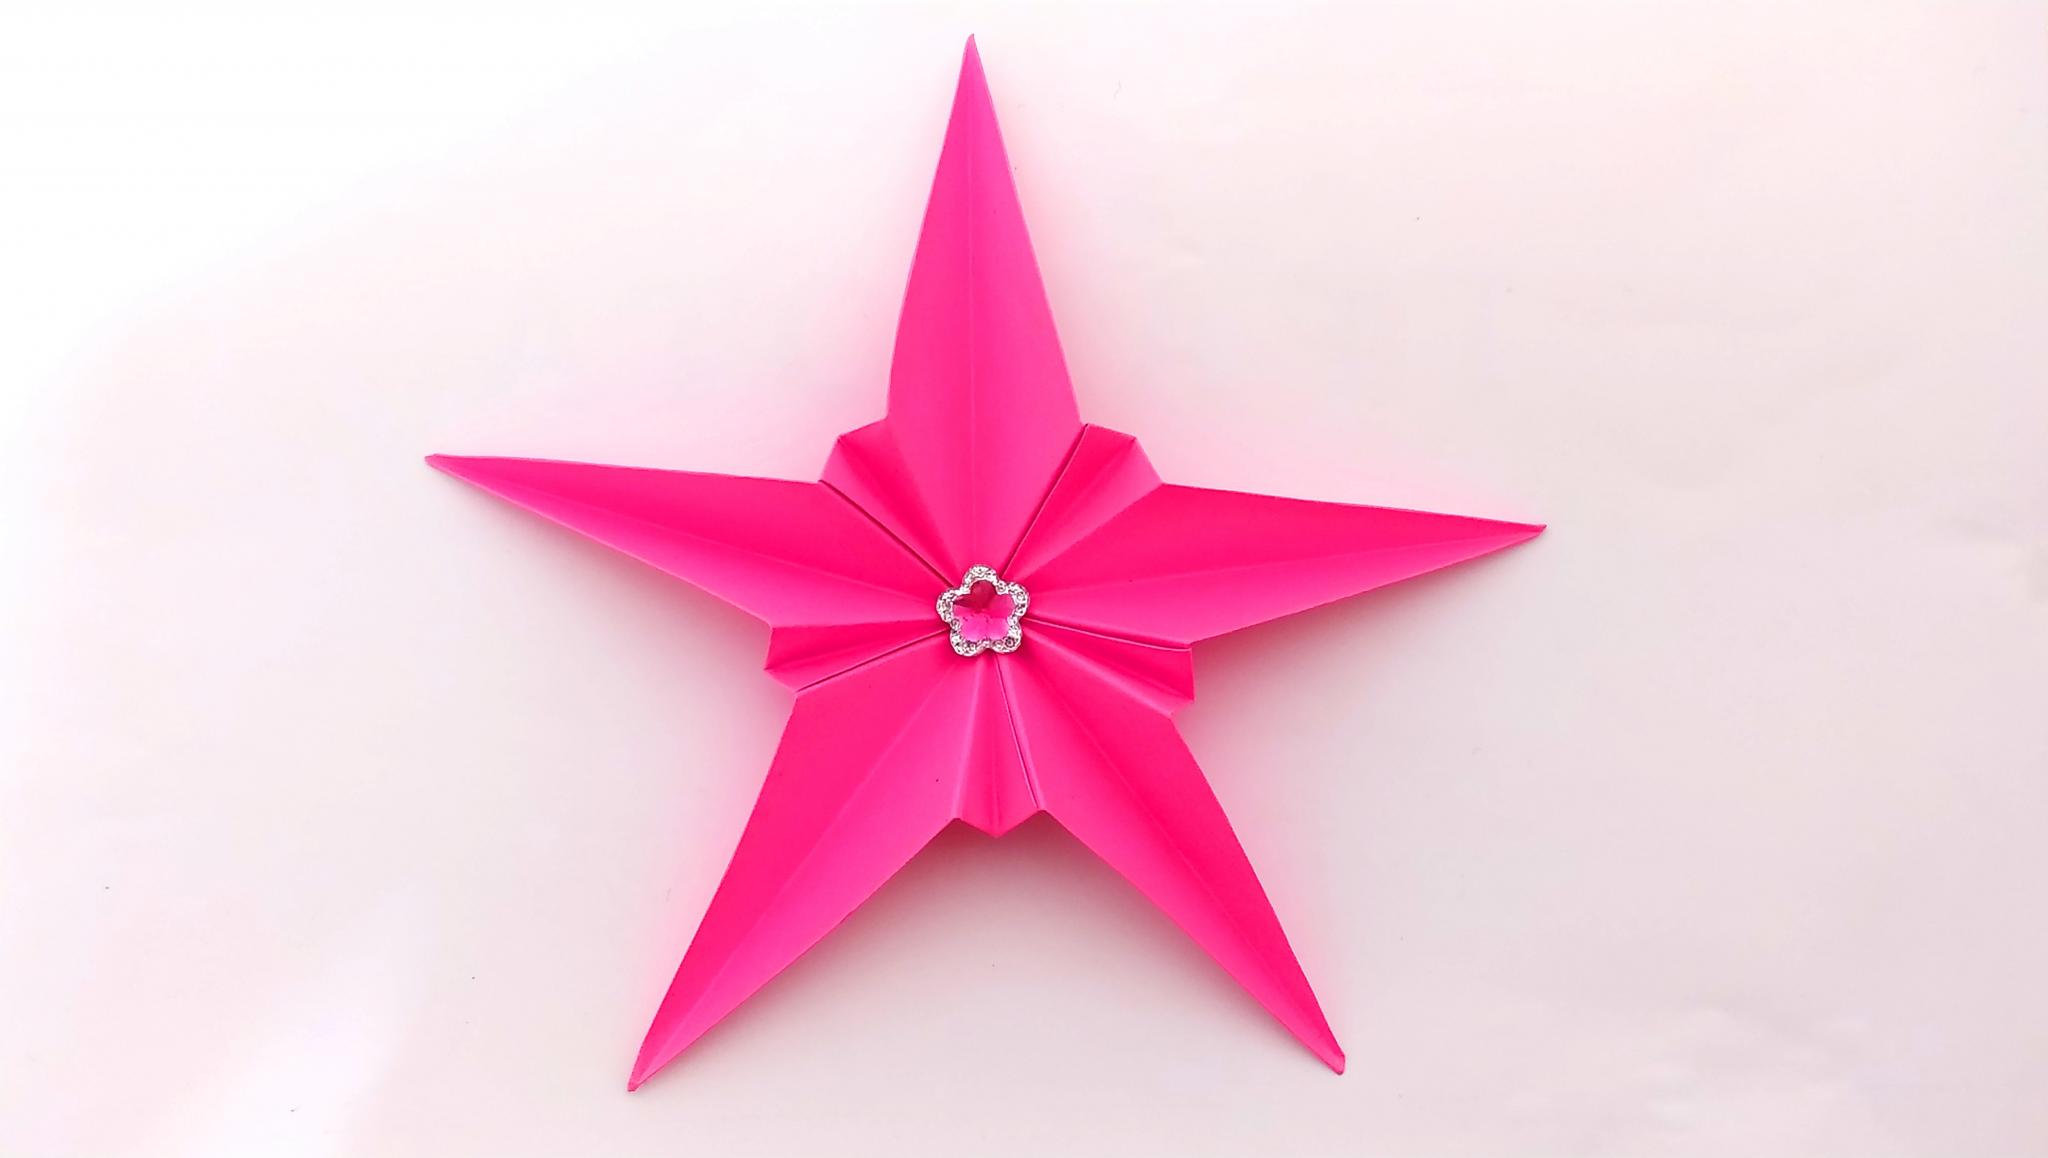 Оригами ЗВЕЗДА ИЗ БУМАГИ. Как сделать звезду из бумаги, поделки на 9 мая - объемная звездочка